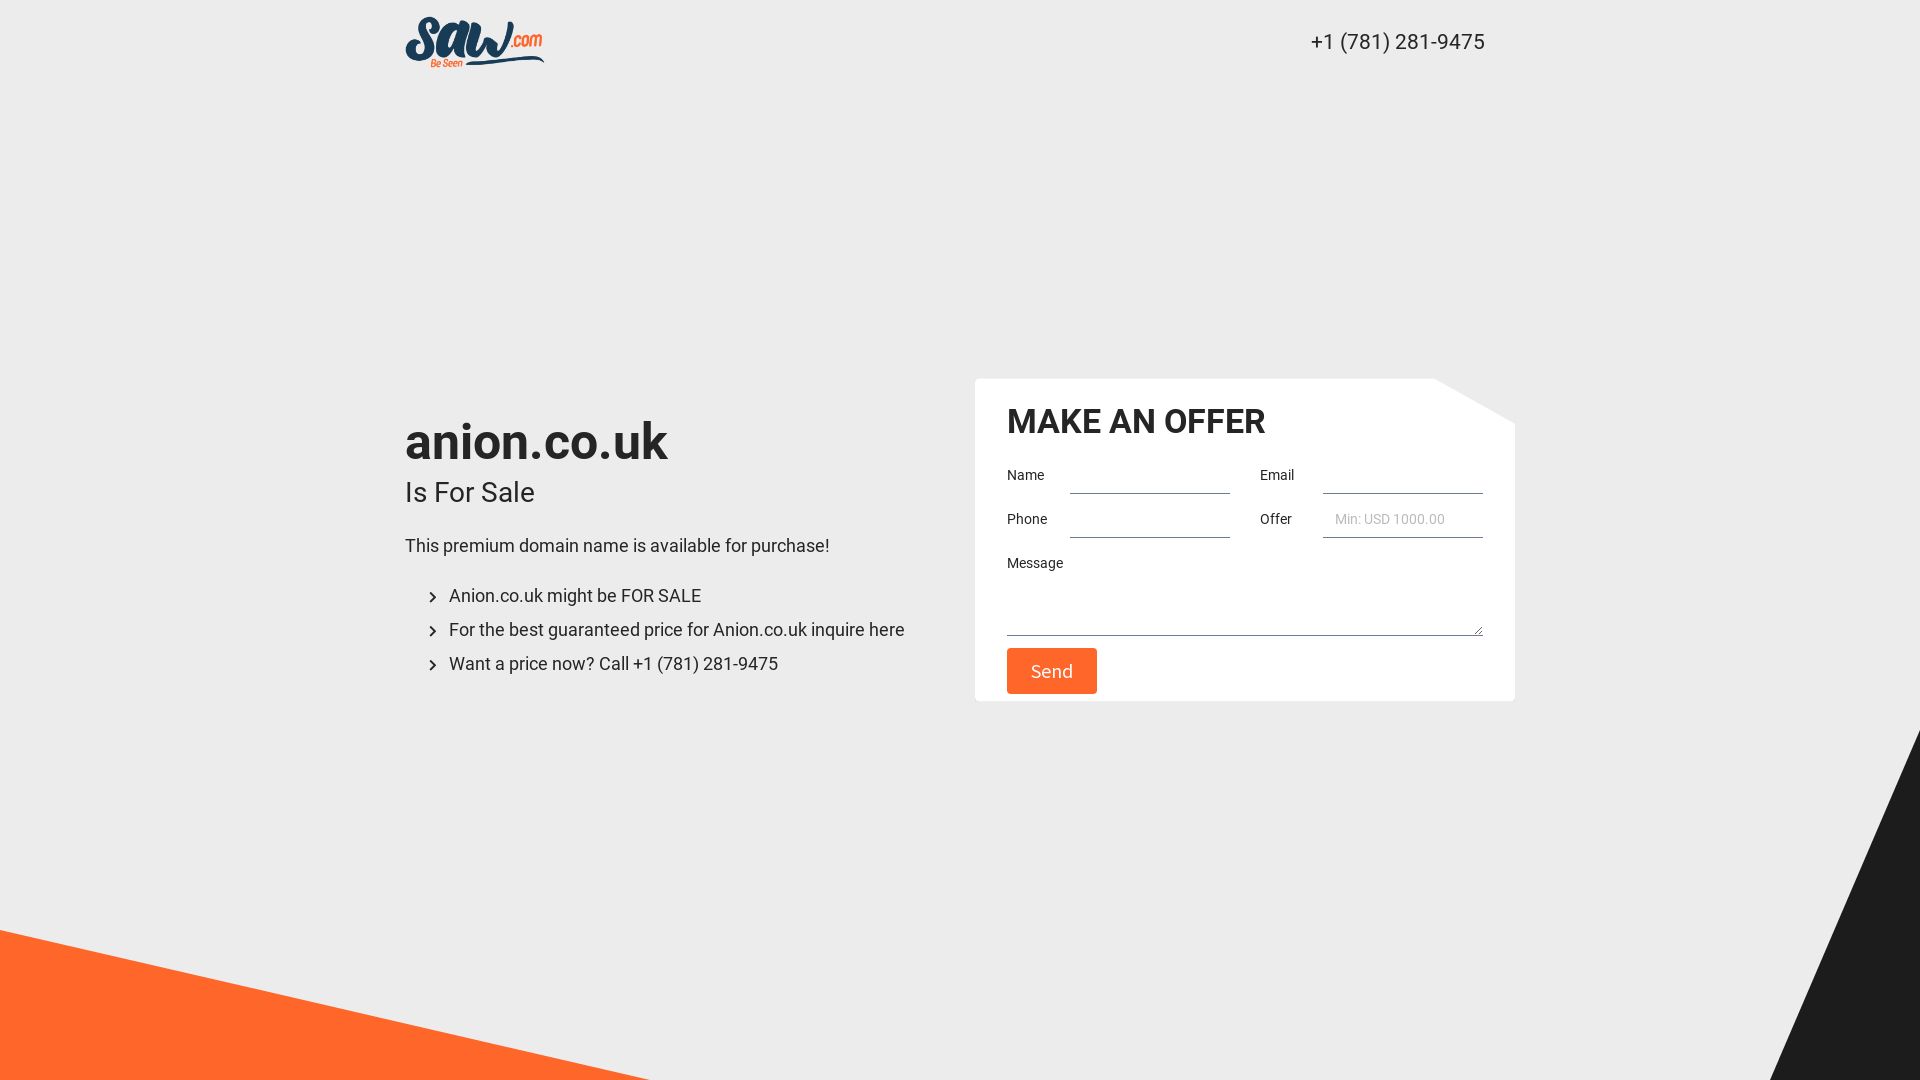 网站状态 anion.co.uk 是  在线的